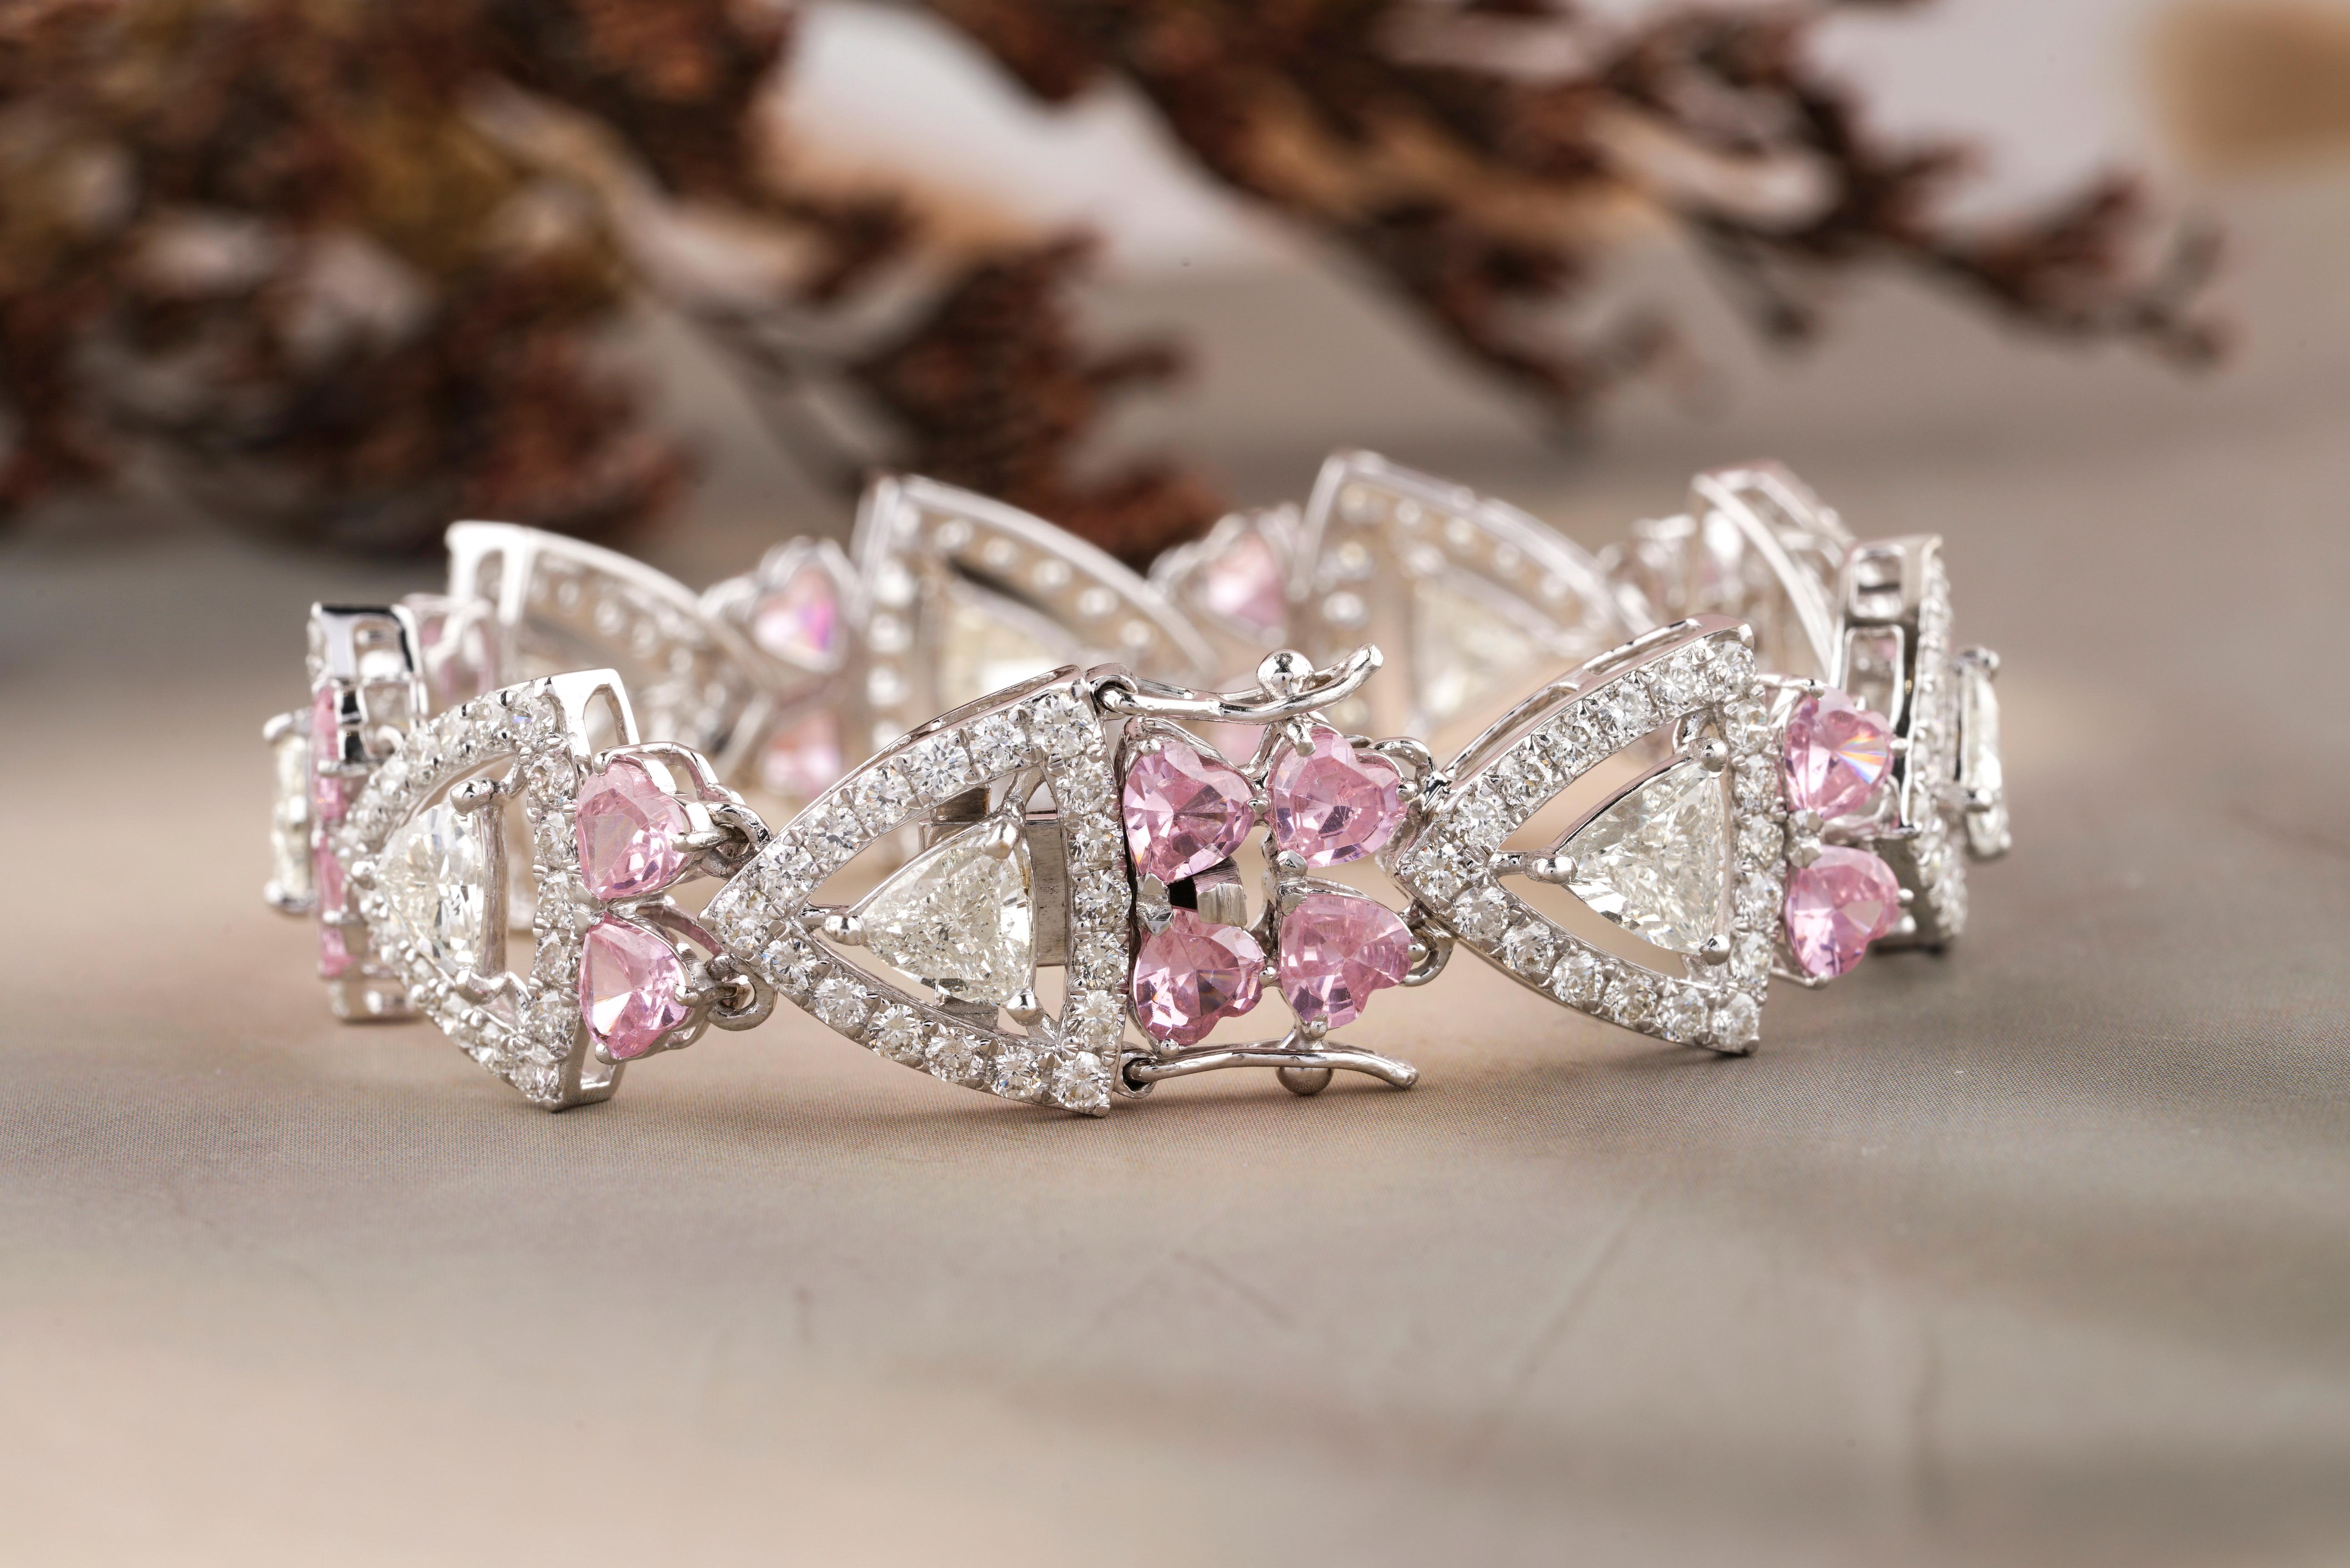 Ce bracelet en diamant et tourmaline rose est un bijou à couper le souffle qui allie la beauté intemporelle du diamant au charme vibrant et féminin de la tourmaline rose. Cette pièce présente des diamants de taille trillion et ronde avec des